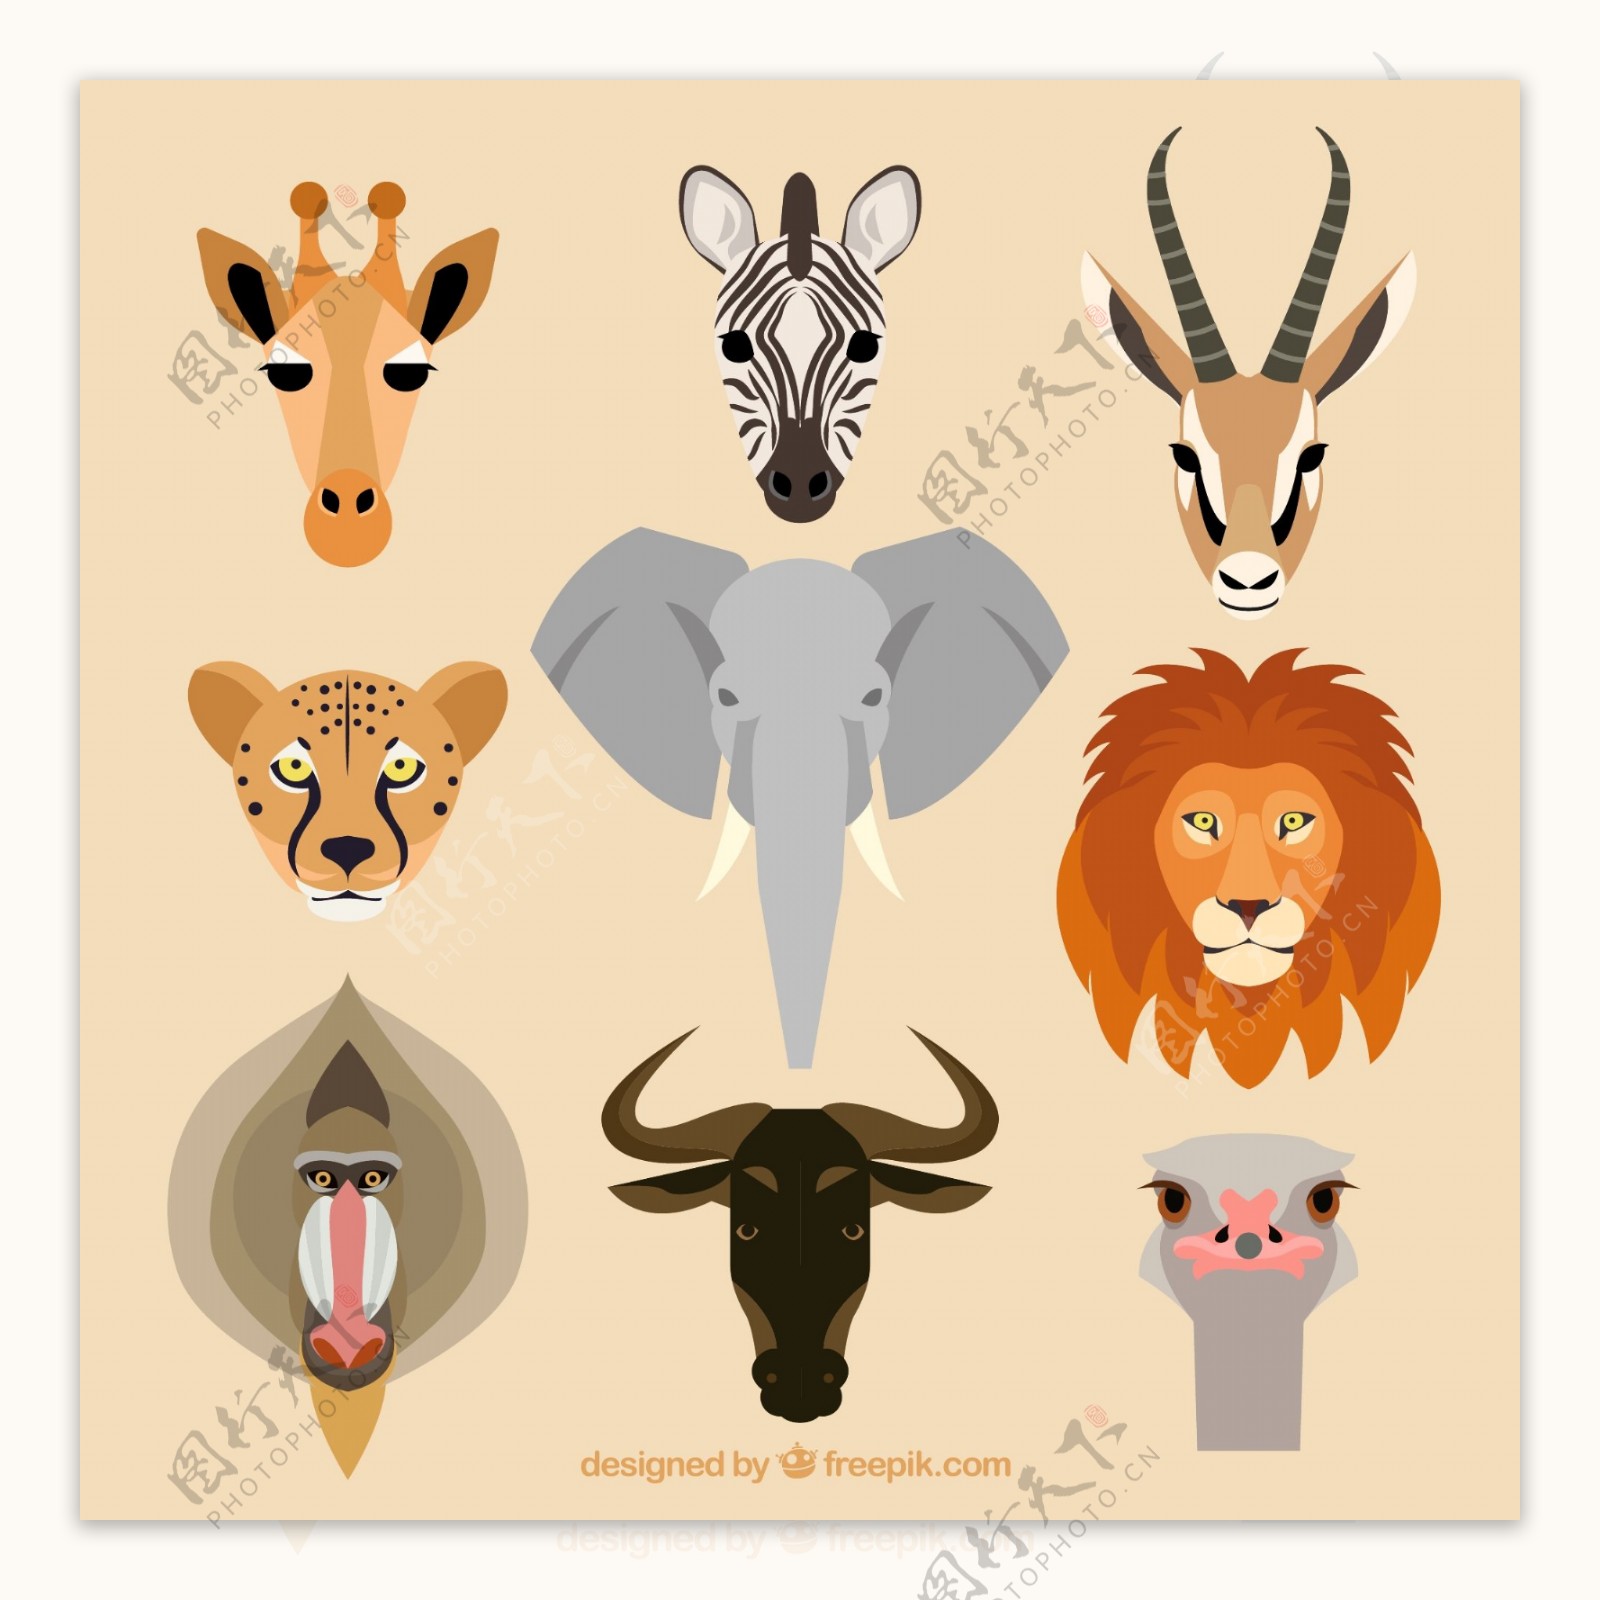 9款野生动物头像设计矢量素材